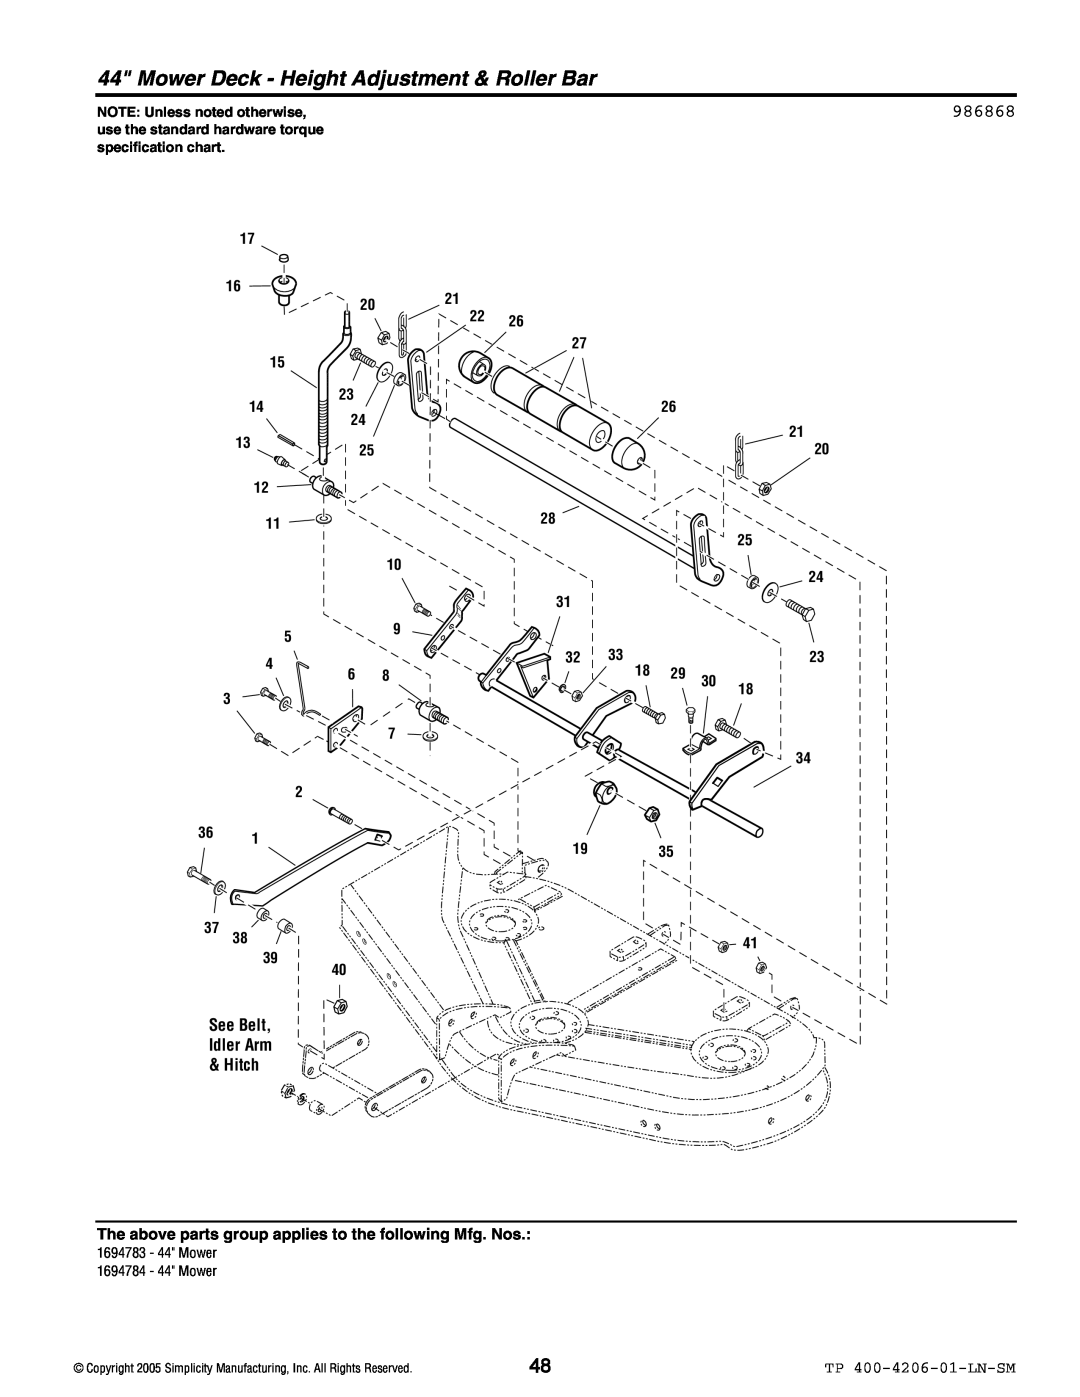 Snapper Lancer / 4400 manual Mower Deck - Height Adjustment & Roller Bar, 986868, See Belt Idler Arm & Hitch 